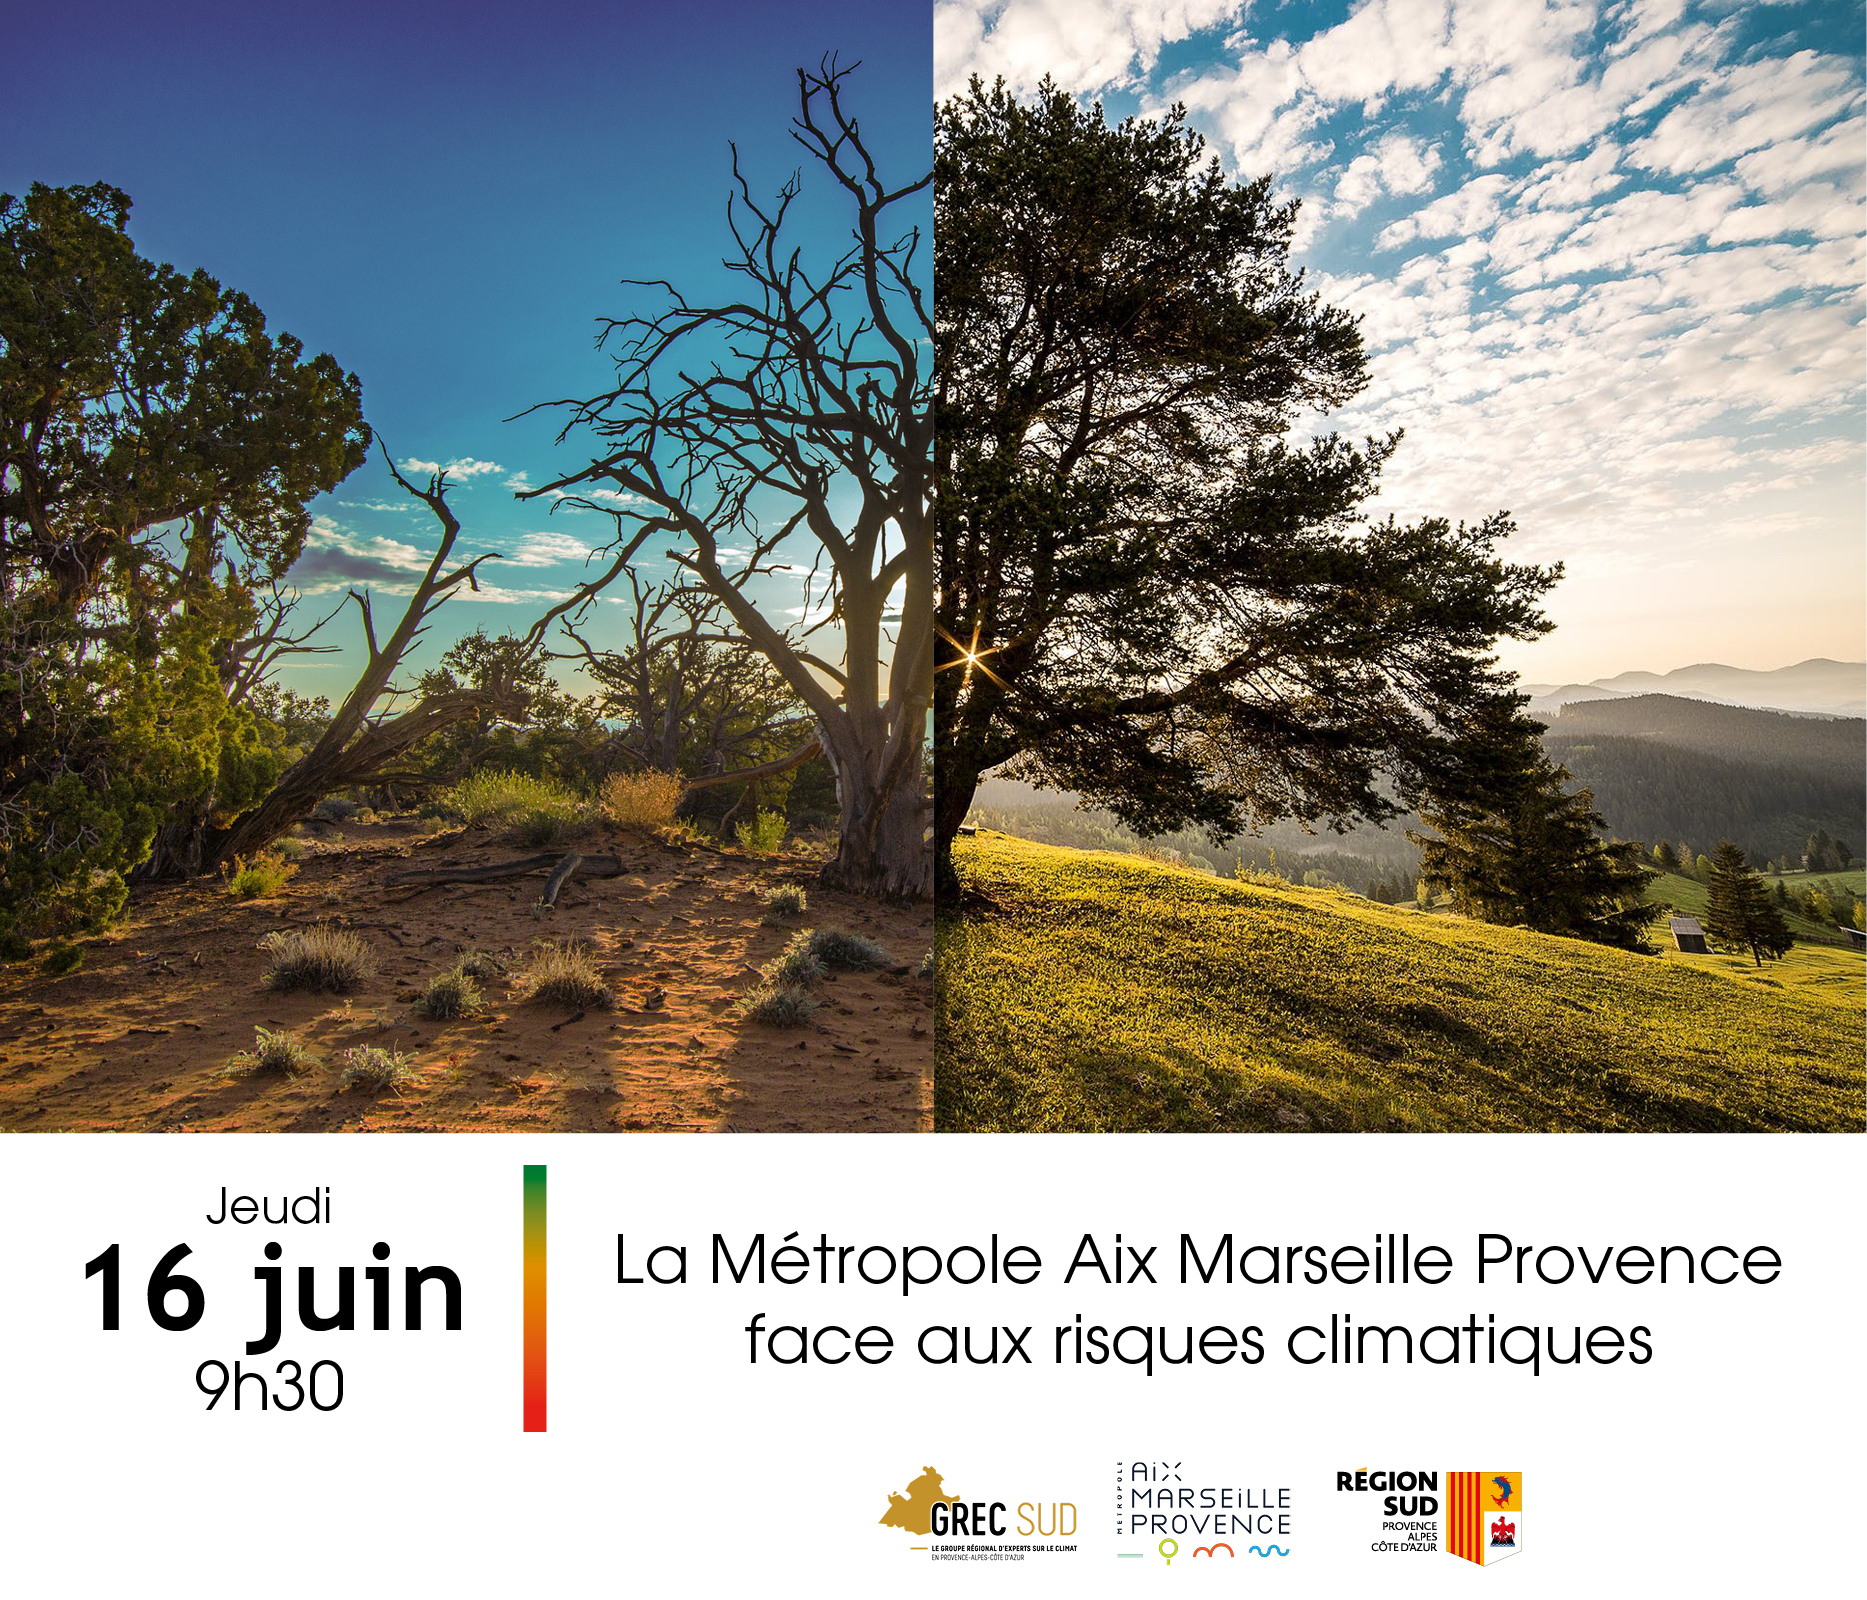 La Métropole Aix-Marseille-Provence face aux risques climatiques